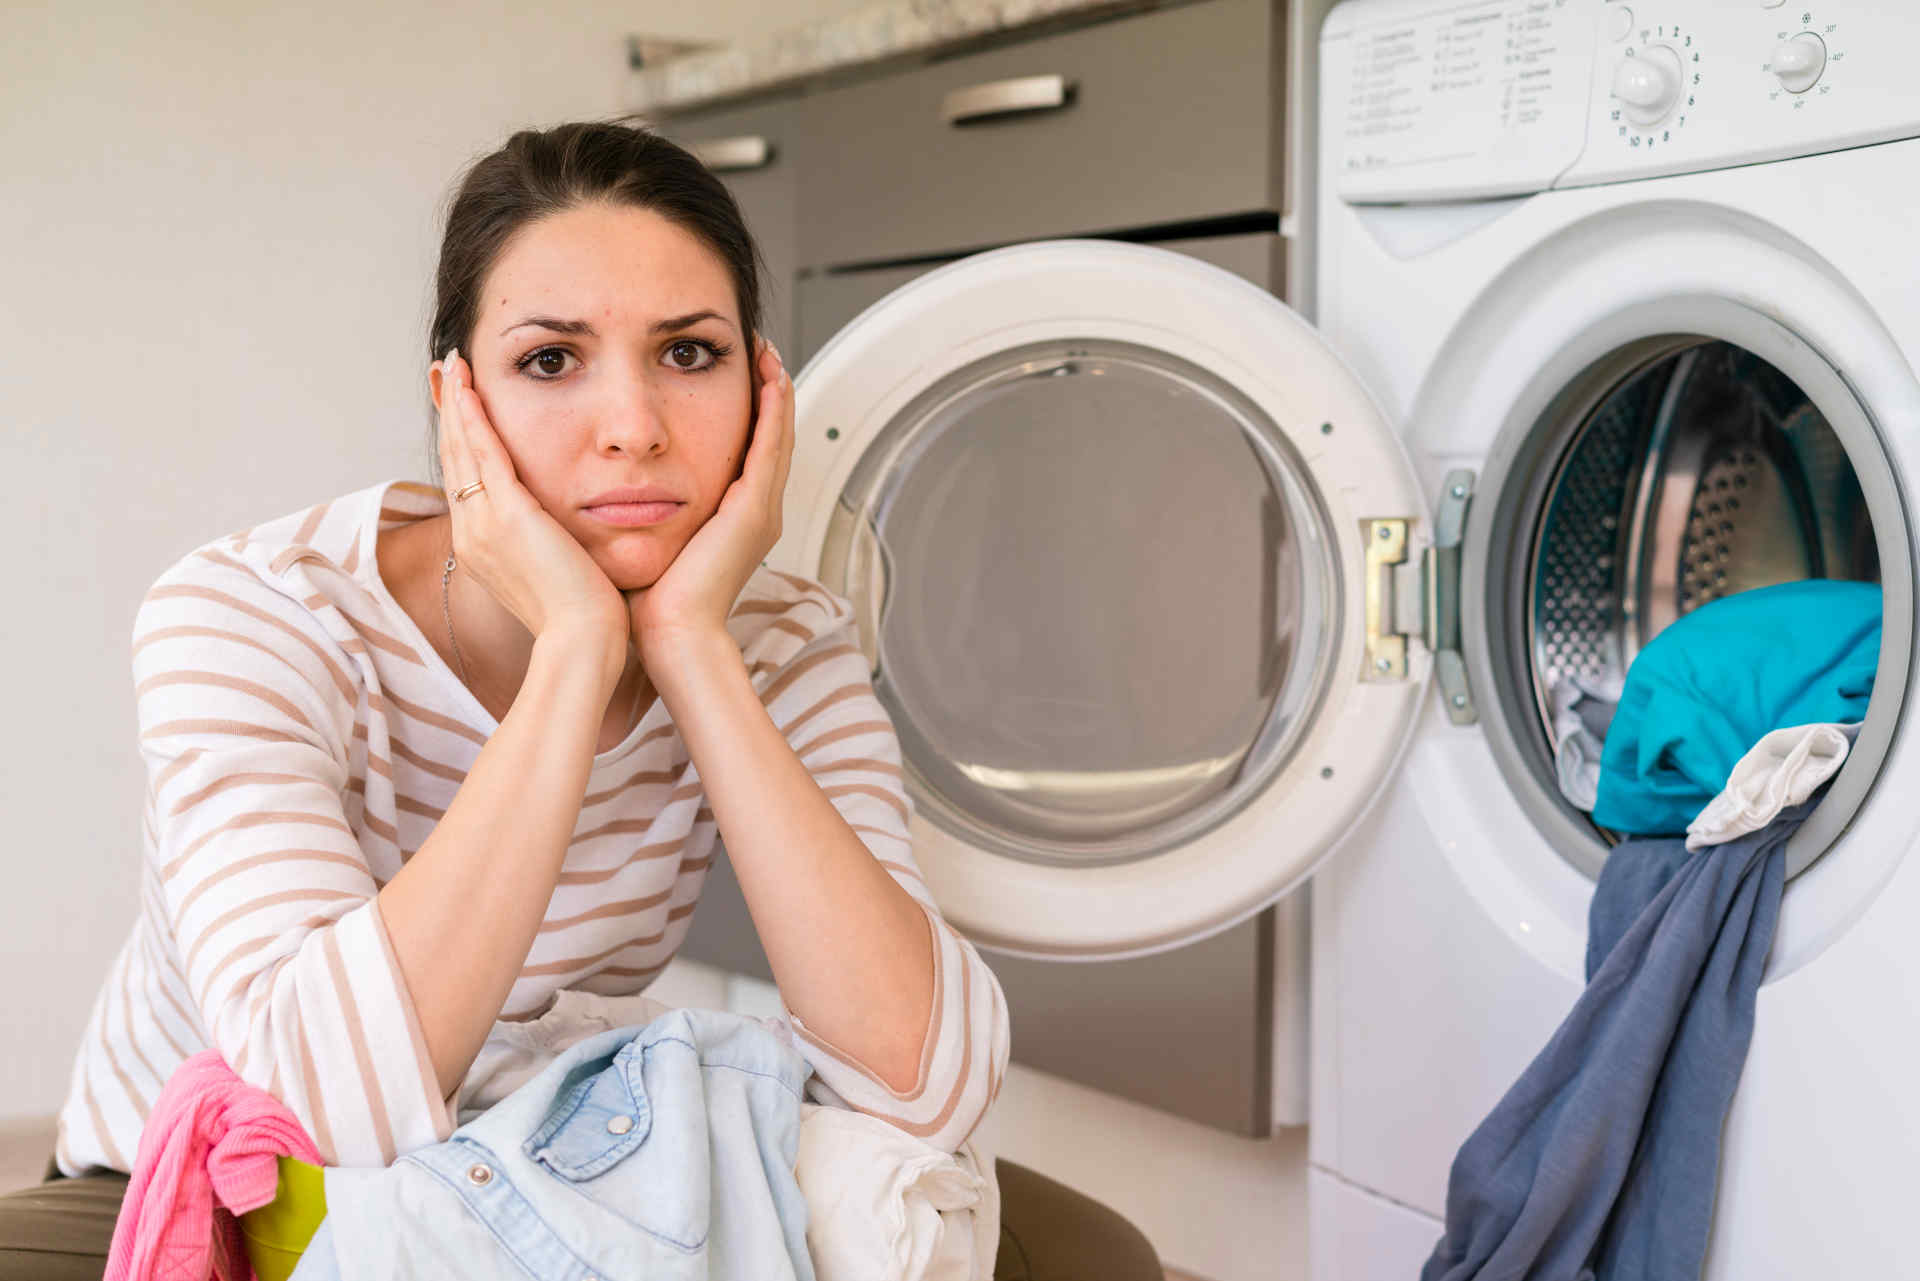 upset-woman-doing-laundry-portrait